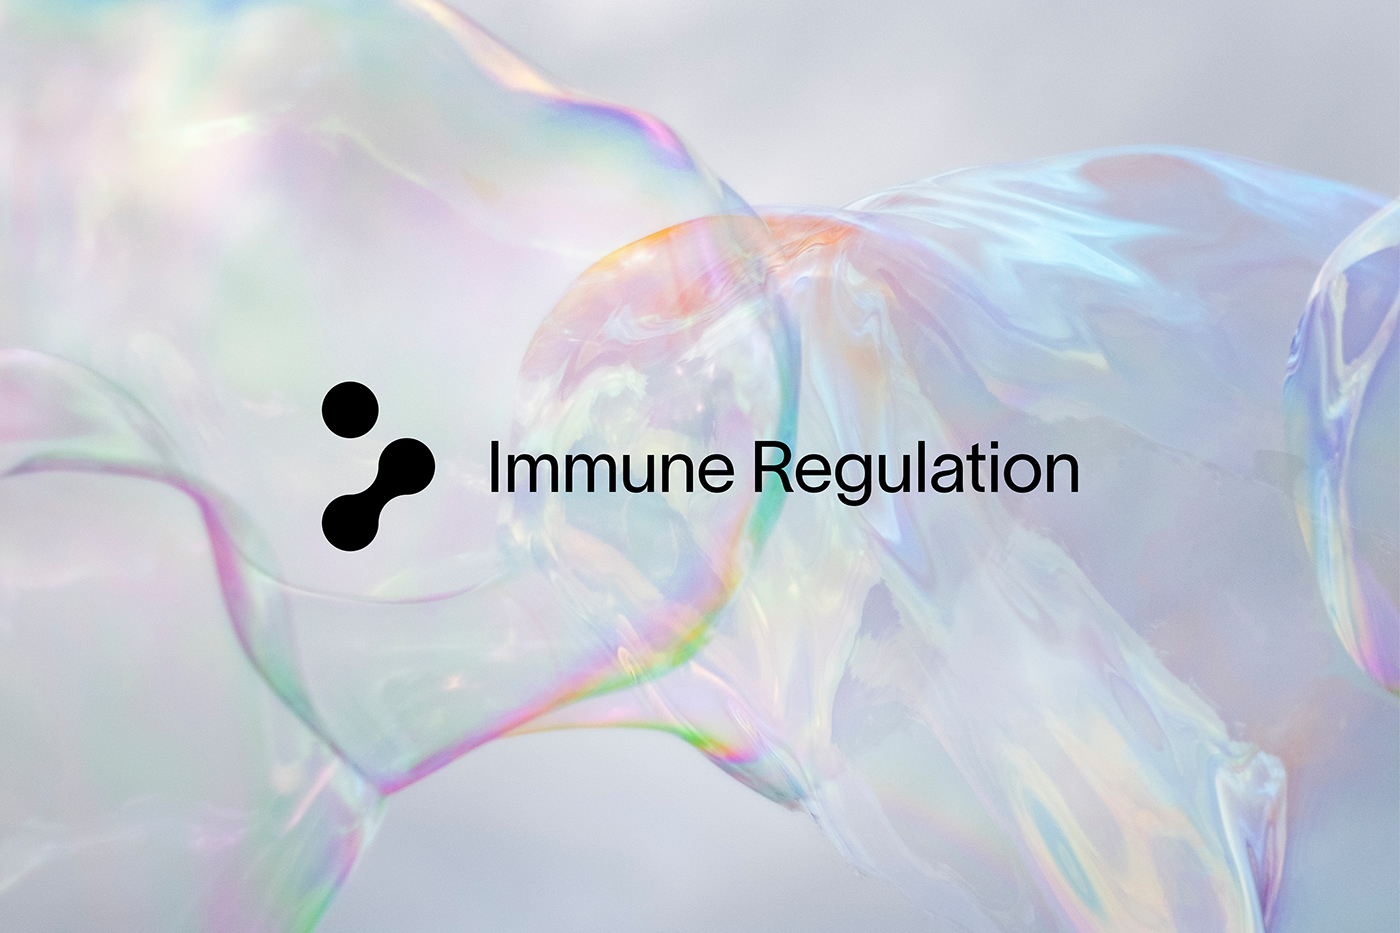 #bioTech #dkovac #immuneregulation #deniskovac